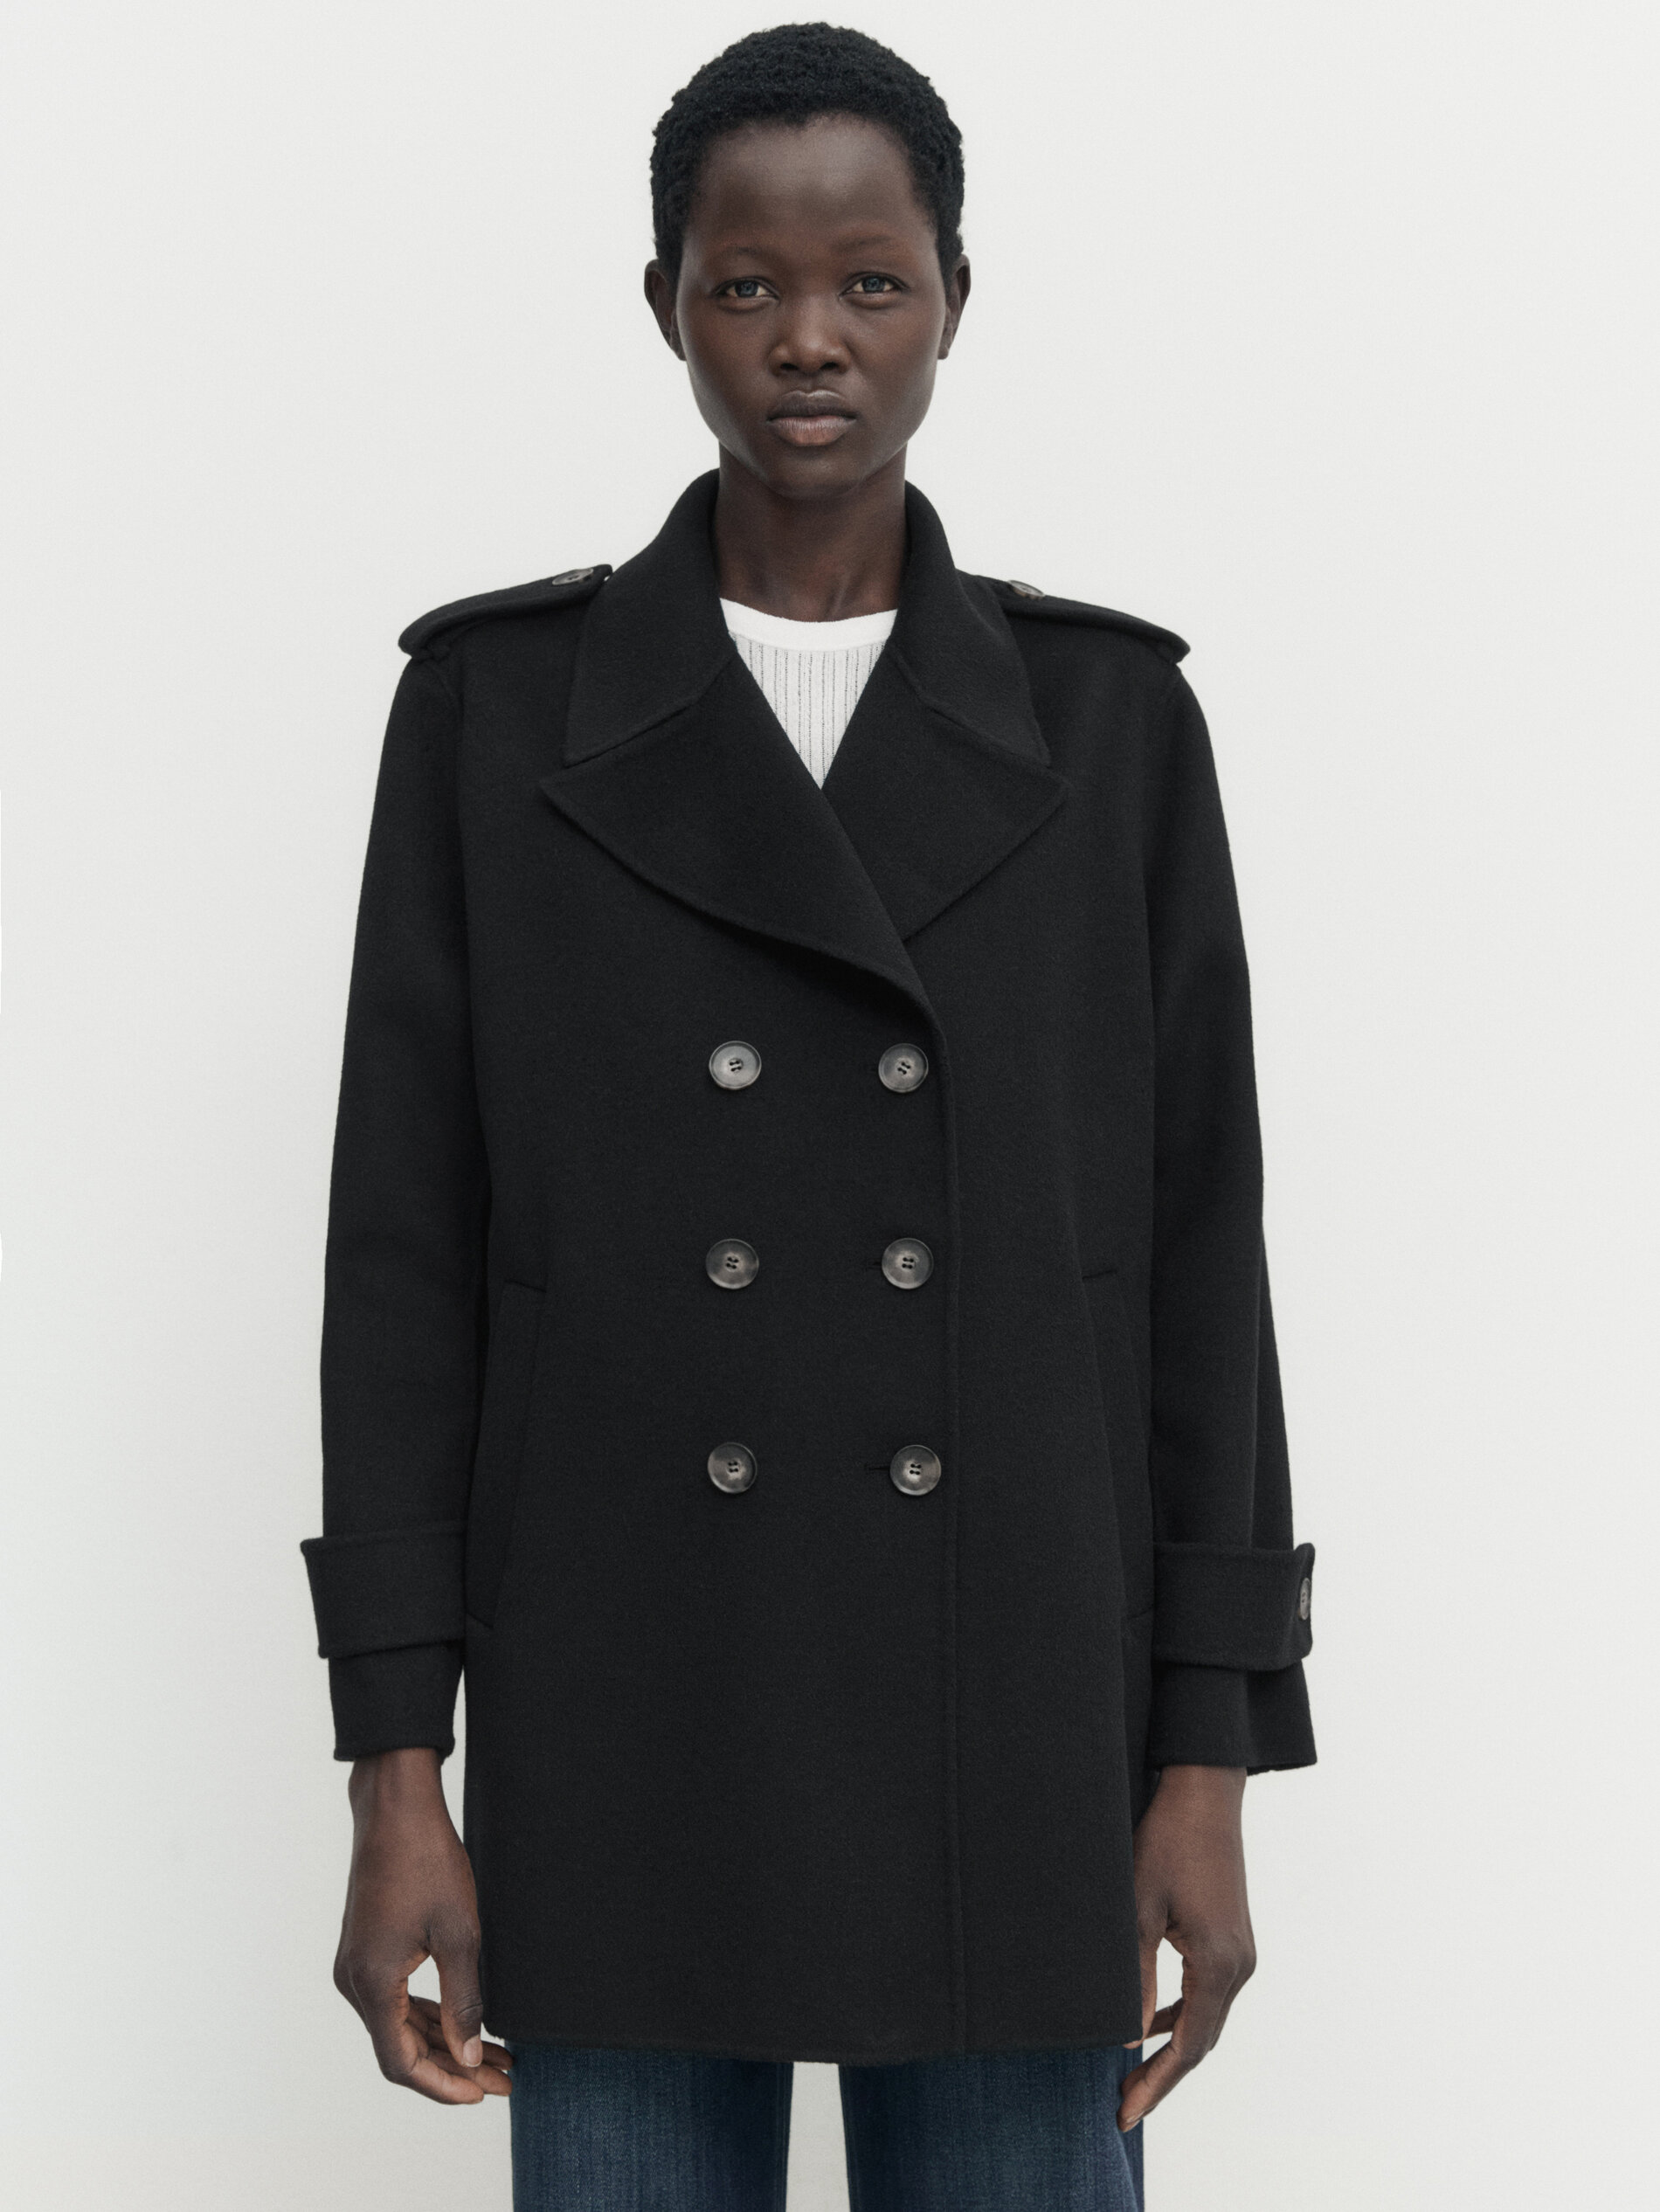 Abrigo chaquetón negro mezcla lana